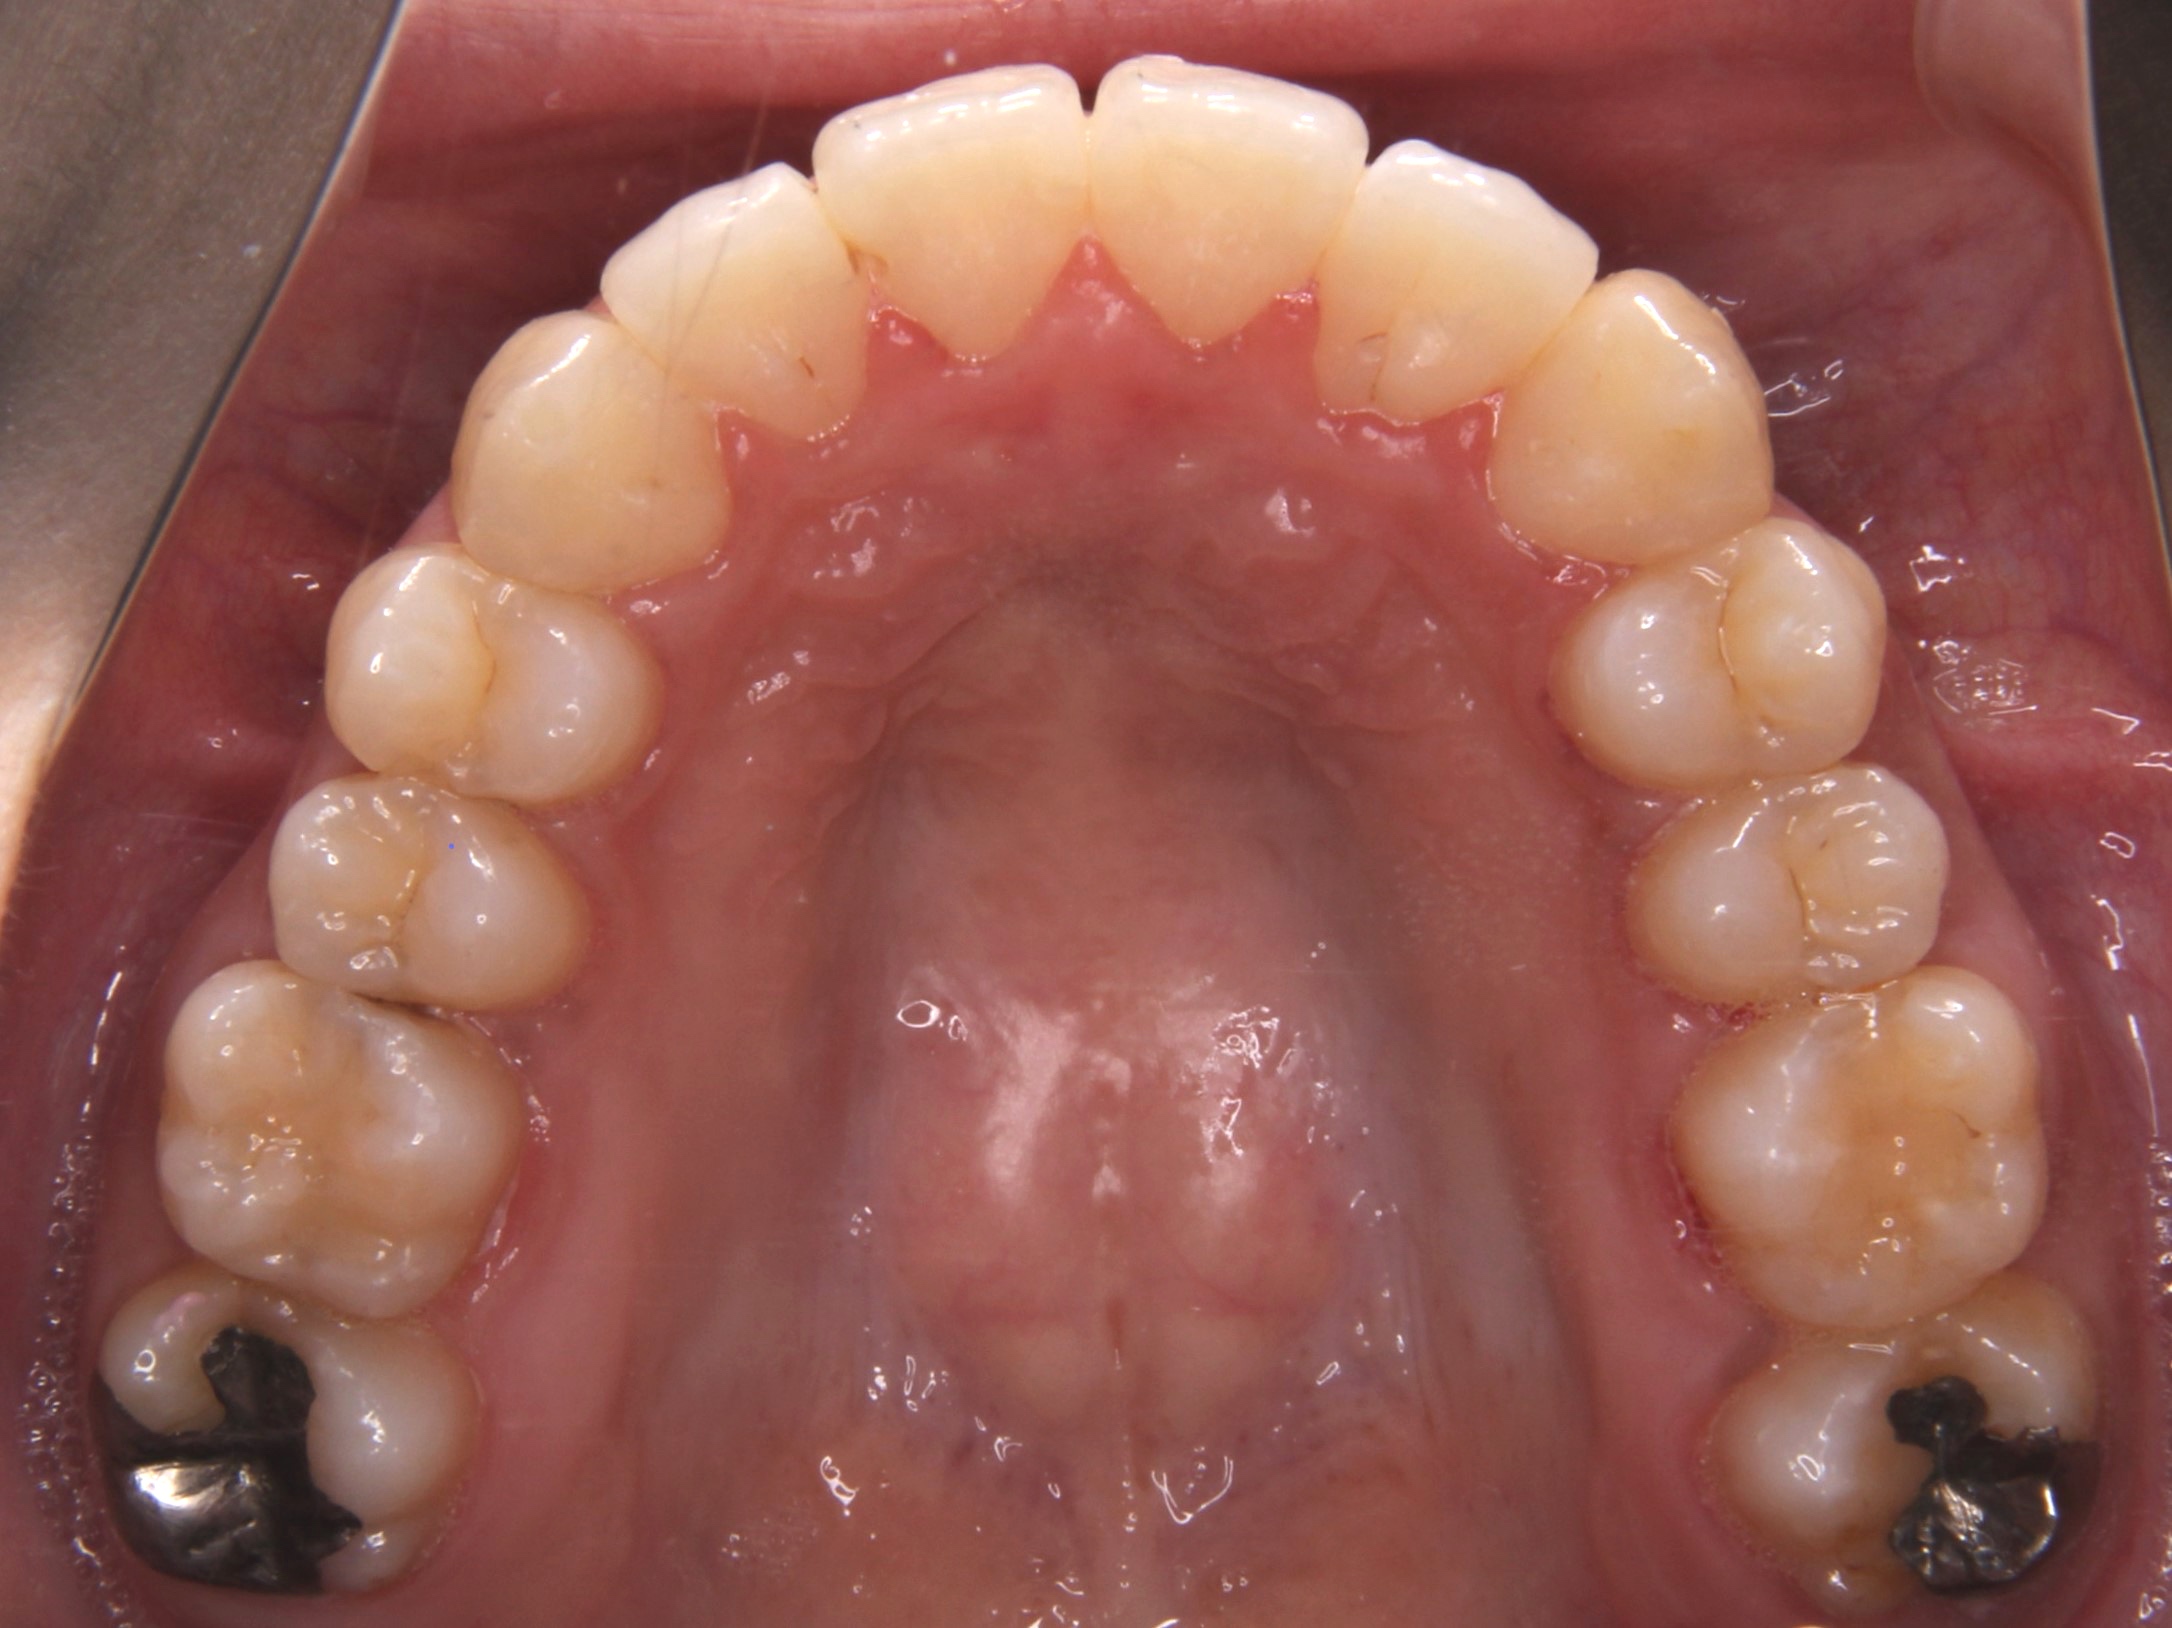 叢生歯列（乱杭歯・デコボコ）を抜歯せずに矯正治療した症例